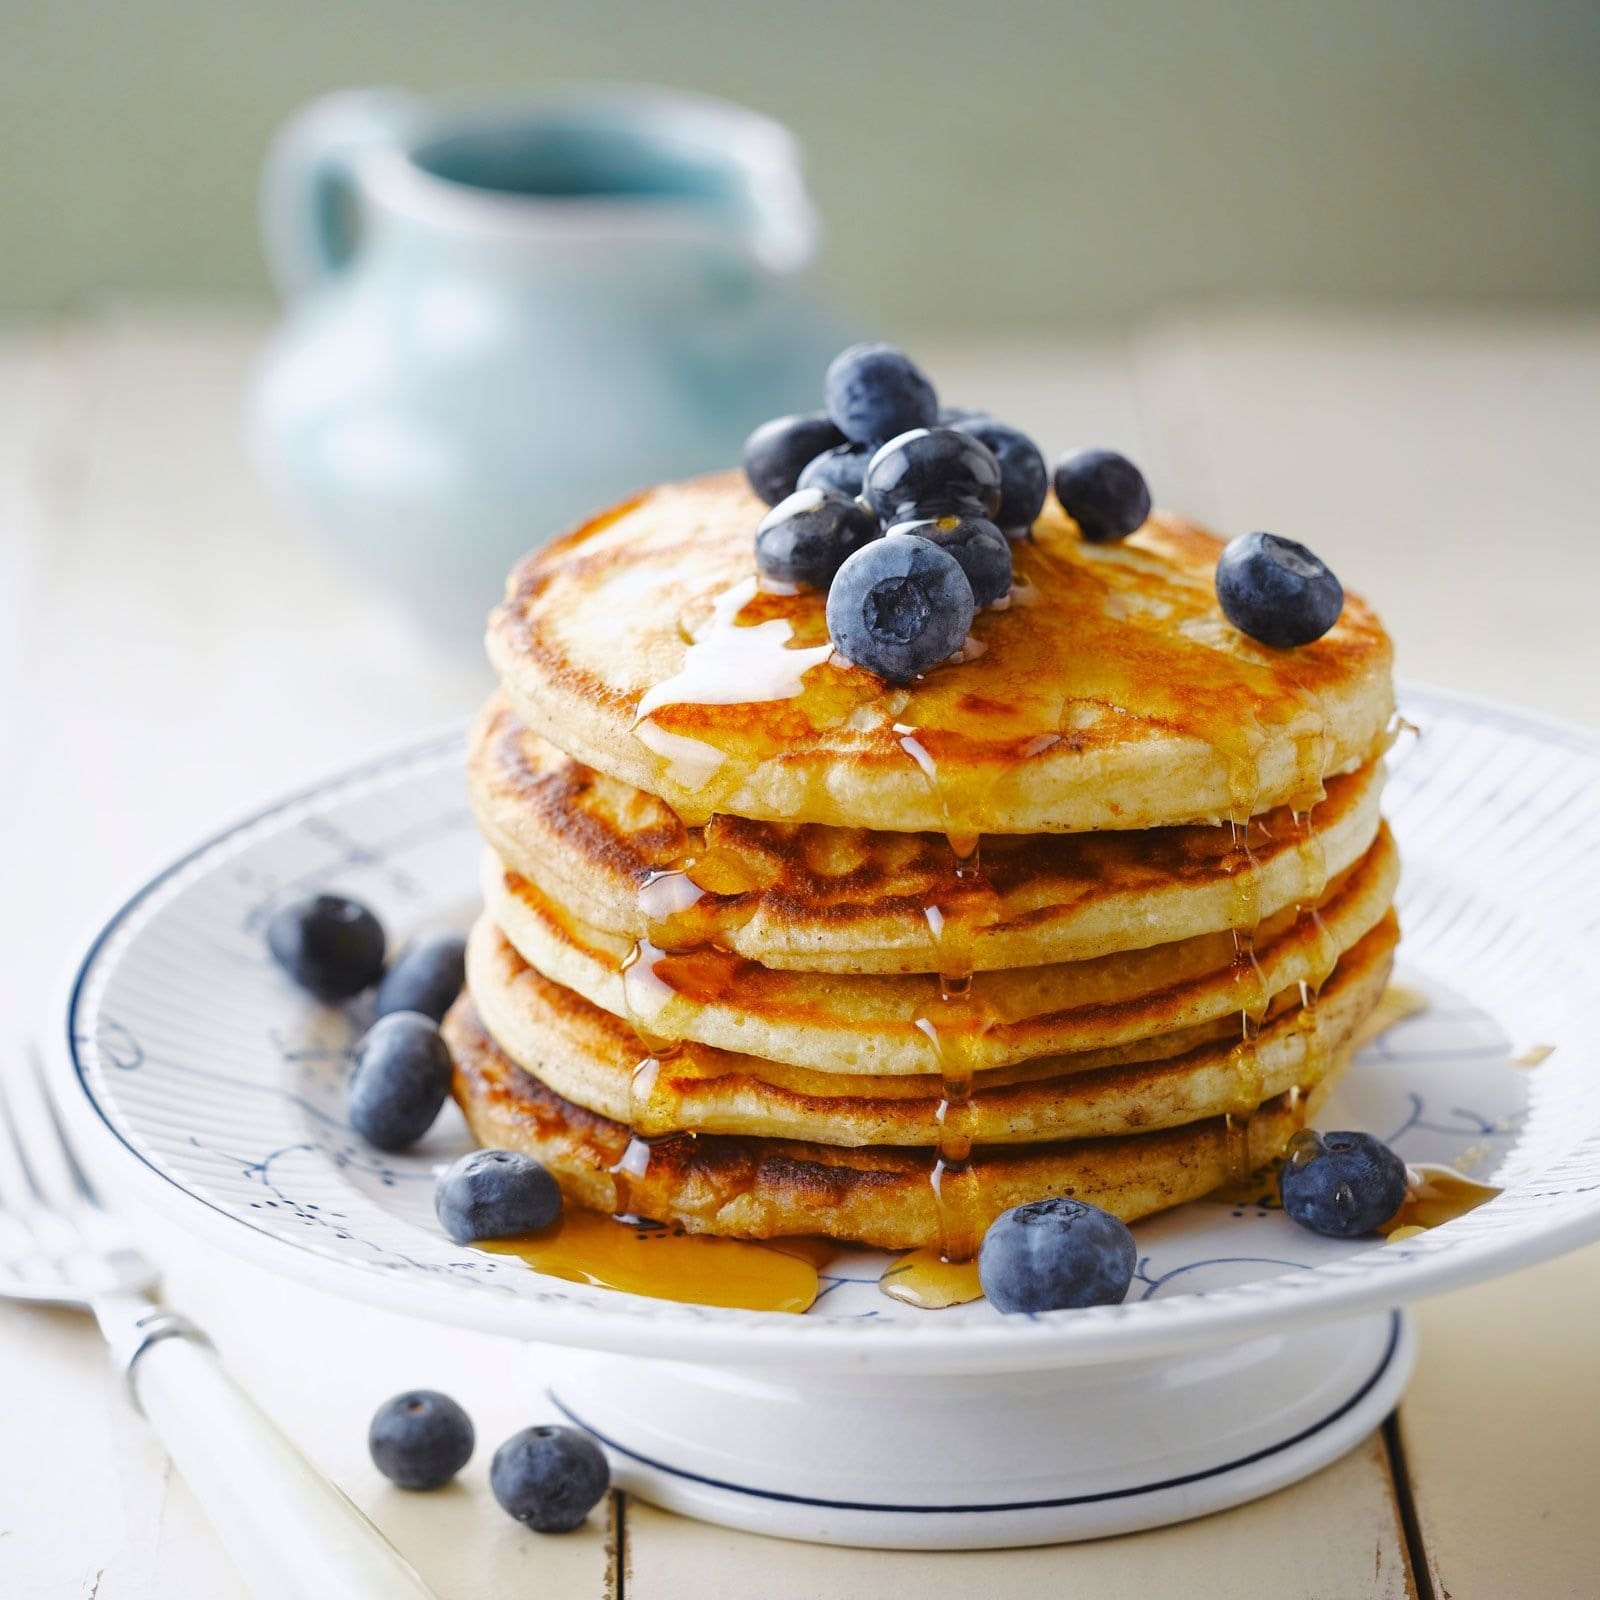 Une assiette blanche avec des pancakes, du sirop brun et des myrtilles et à l’arrière une petite carafe bleu. Le tout sur une table en bois blanche